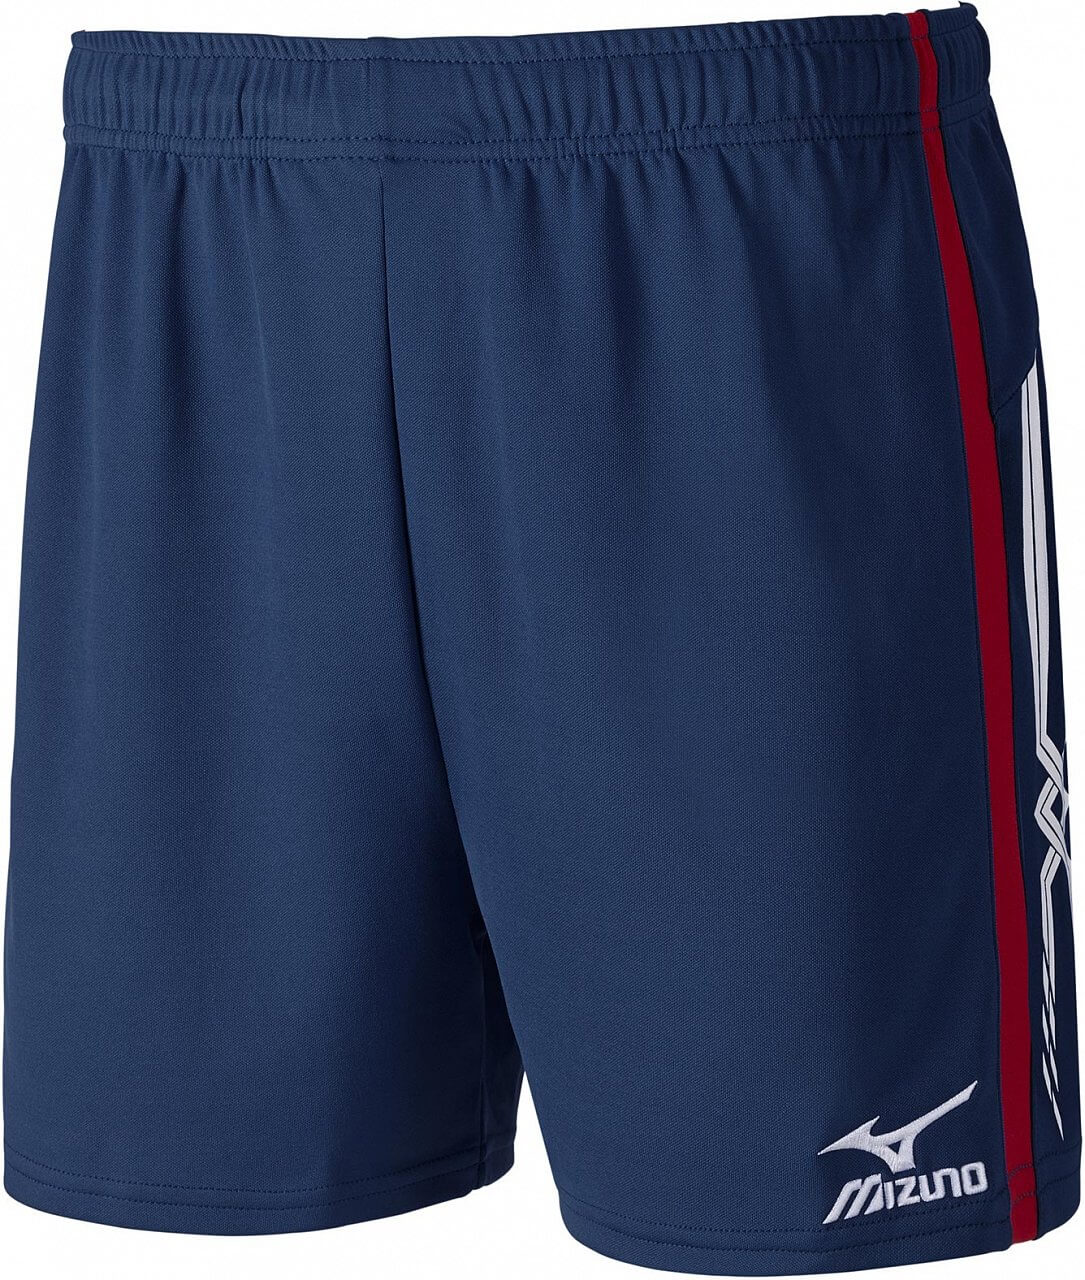 Pánské volejbalové kraťasy Mizuno Premium Shorts